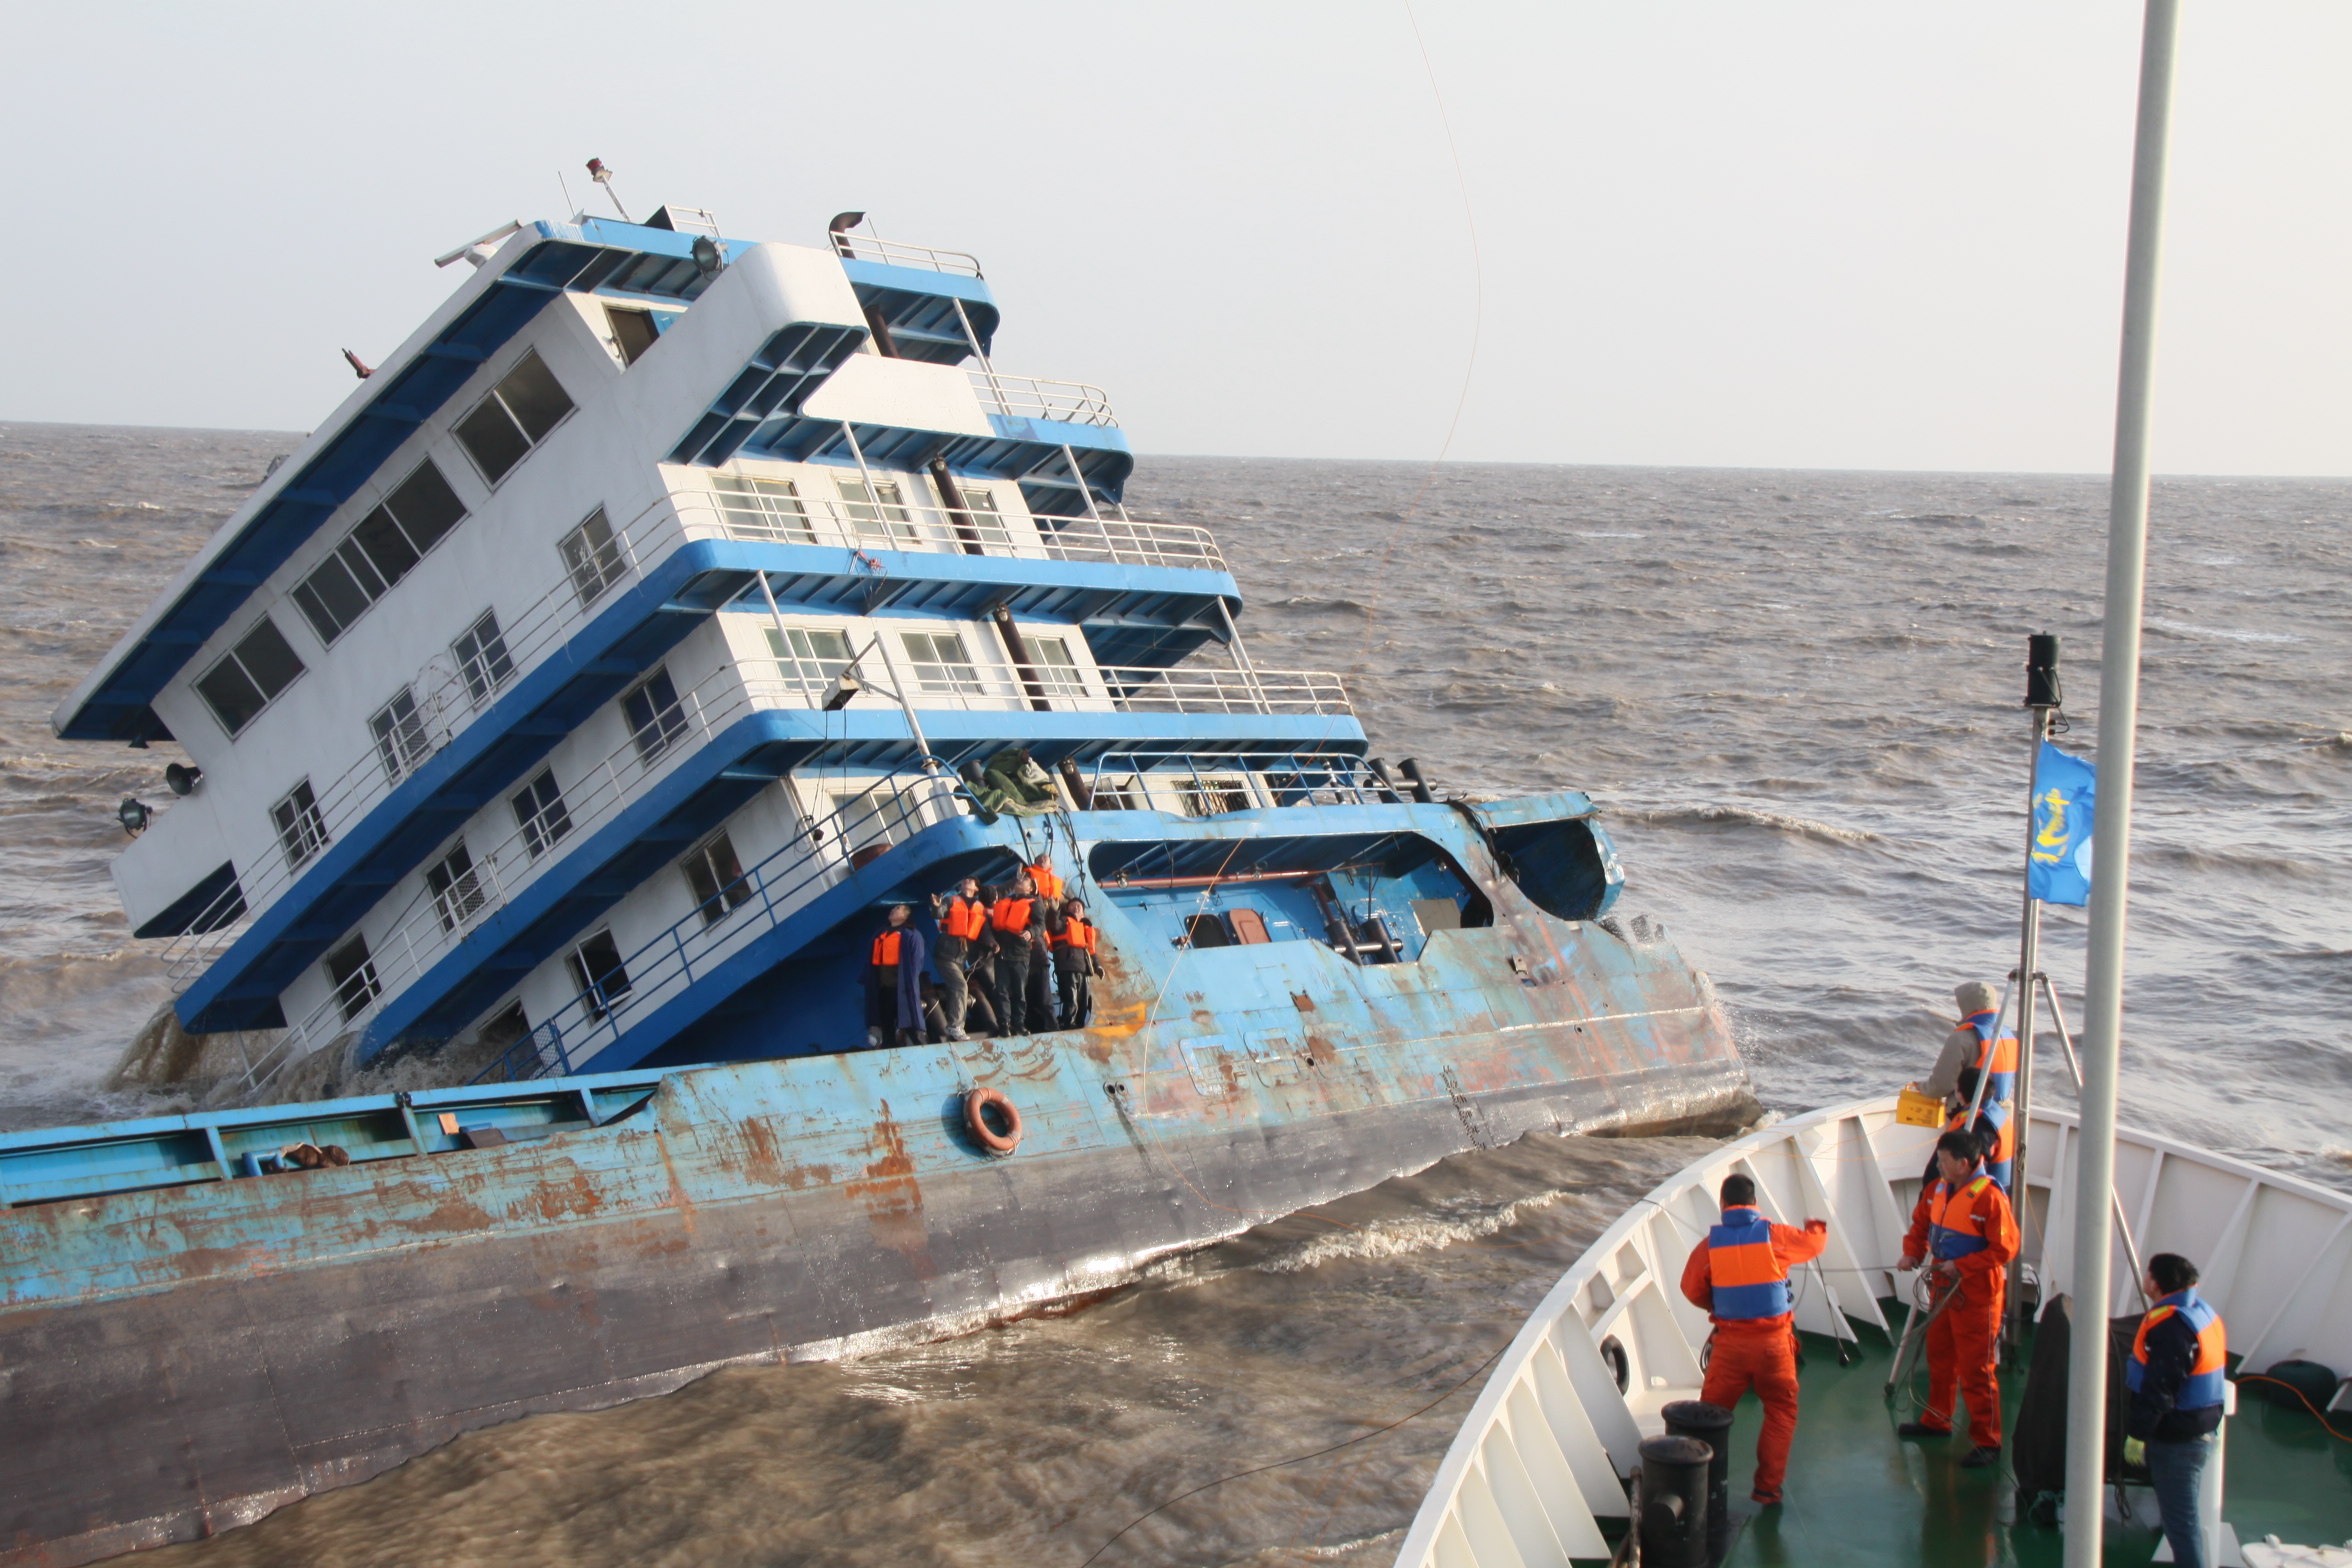 货轮连云港搁浅致七人遇险 海事部门紧急协调救助